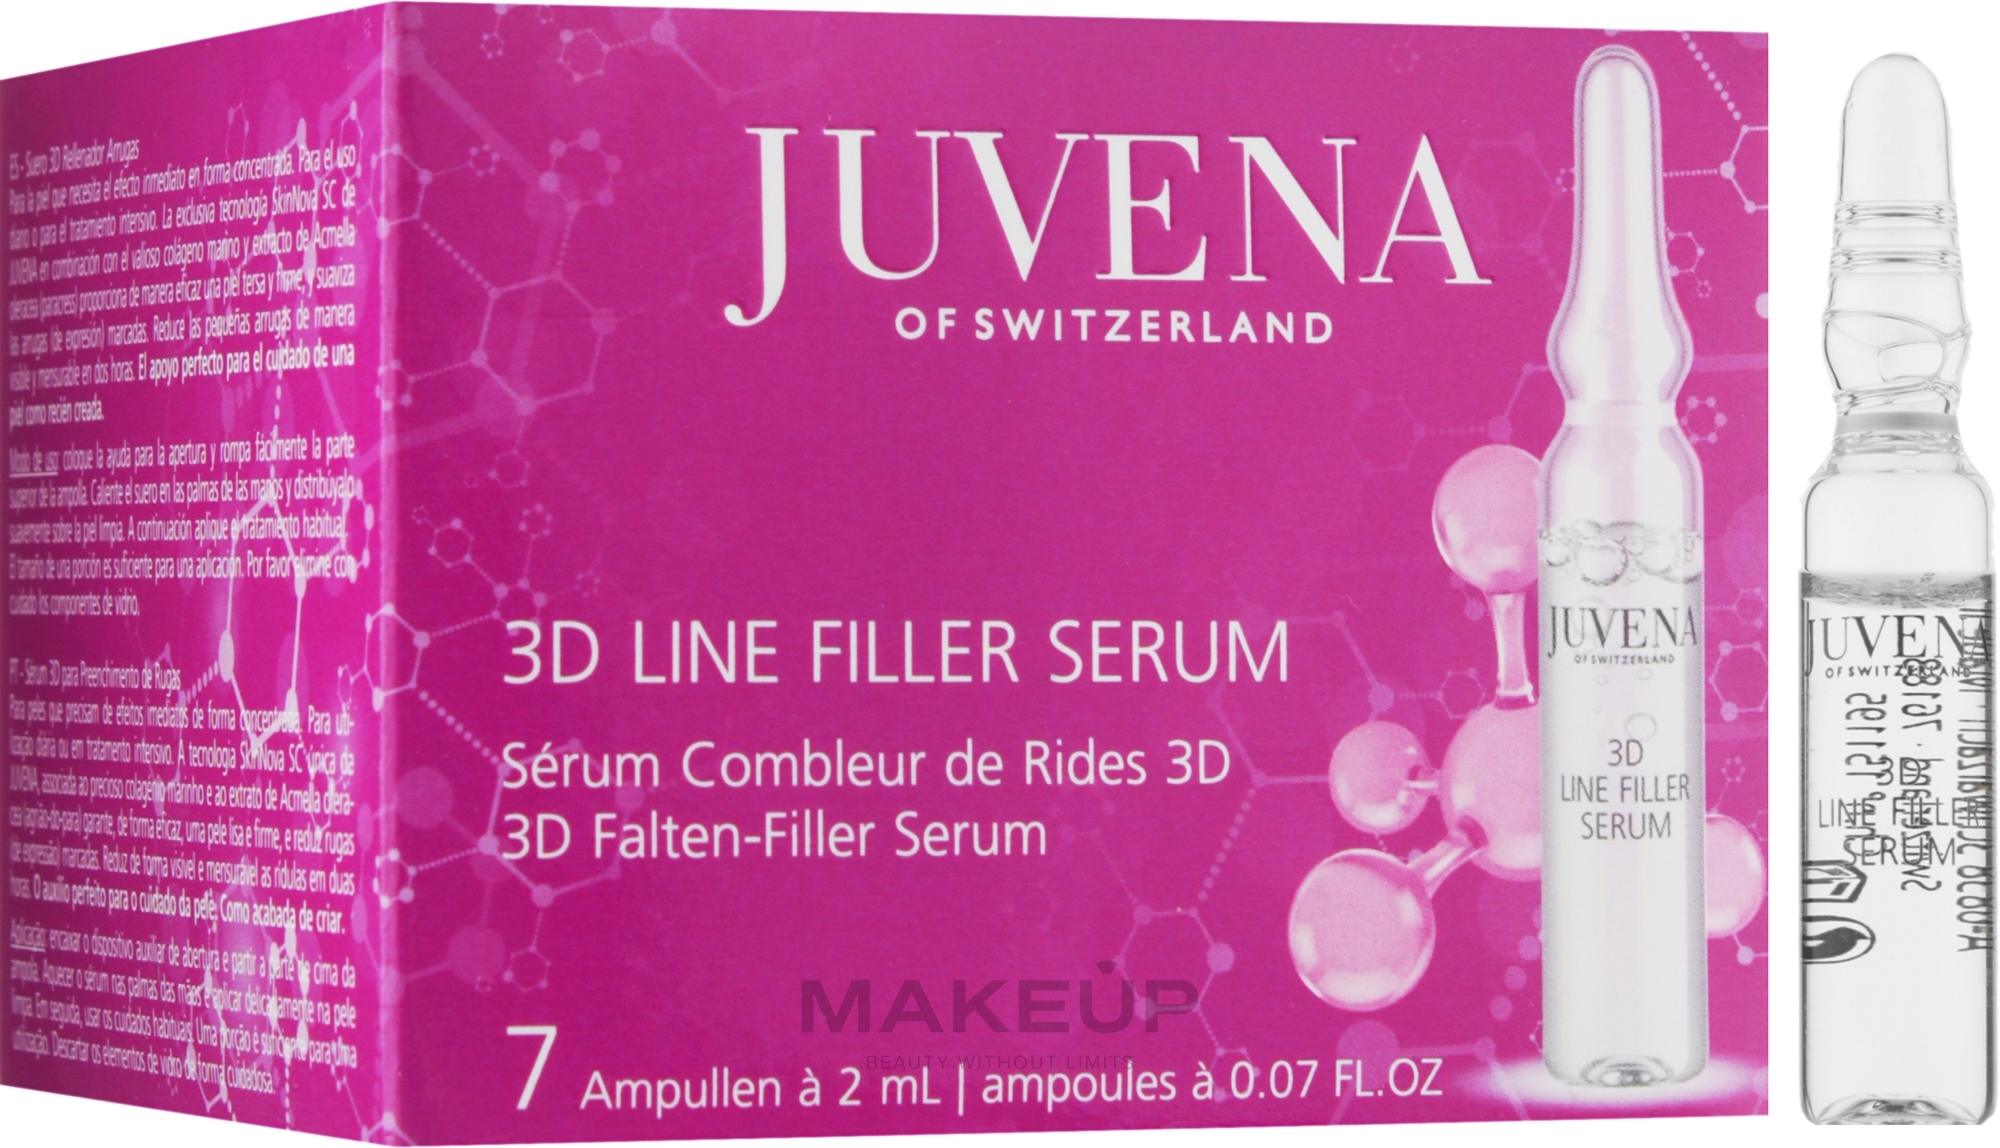 Сыворотка-филлер с эффектом 3D против морщин - Juvena 3D Line Filler Serum — фото 7x2ml